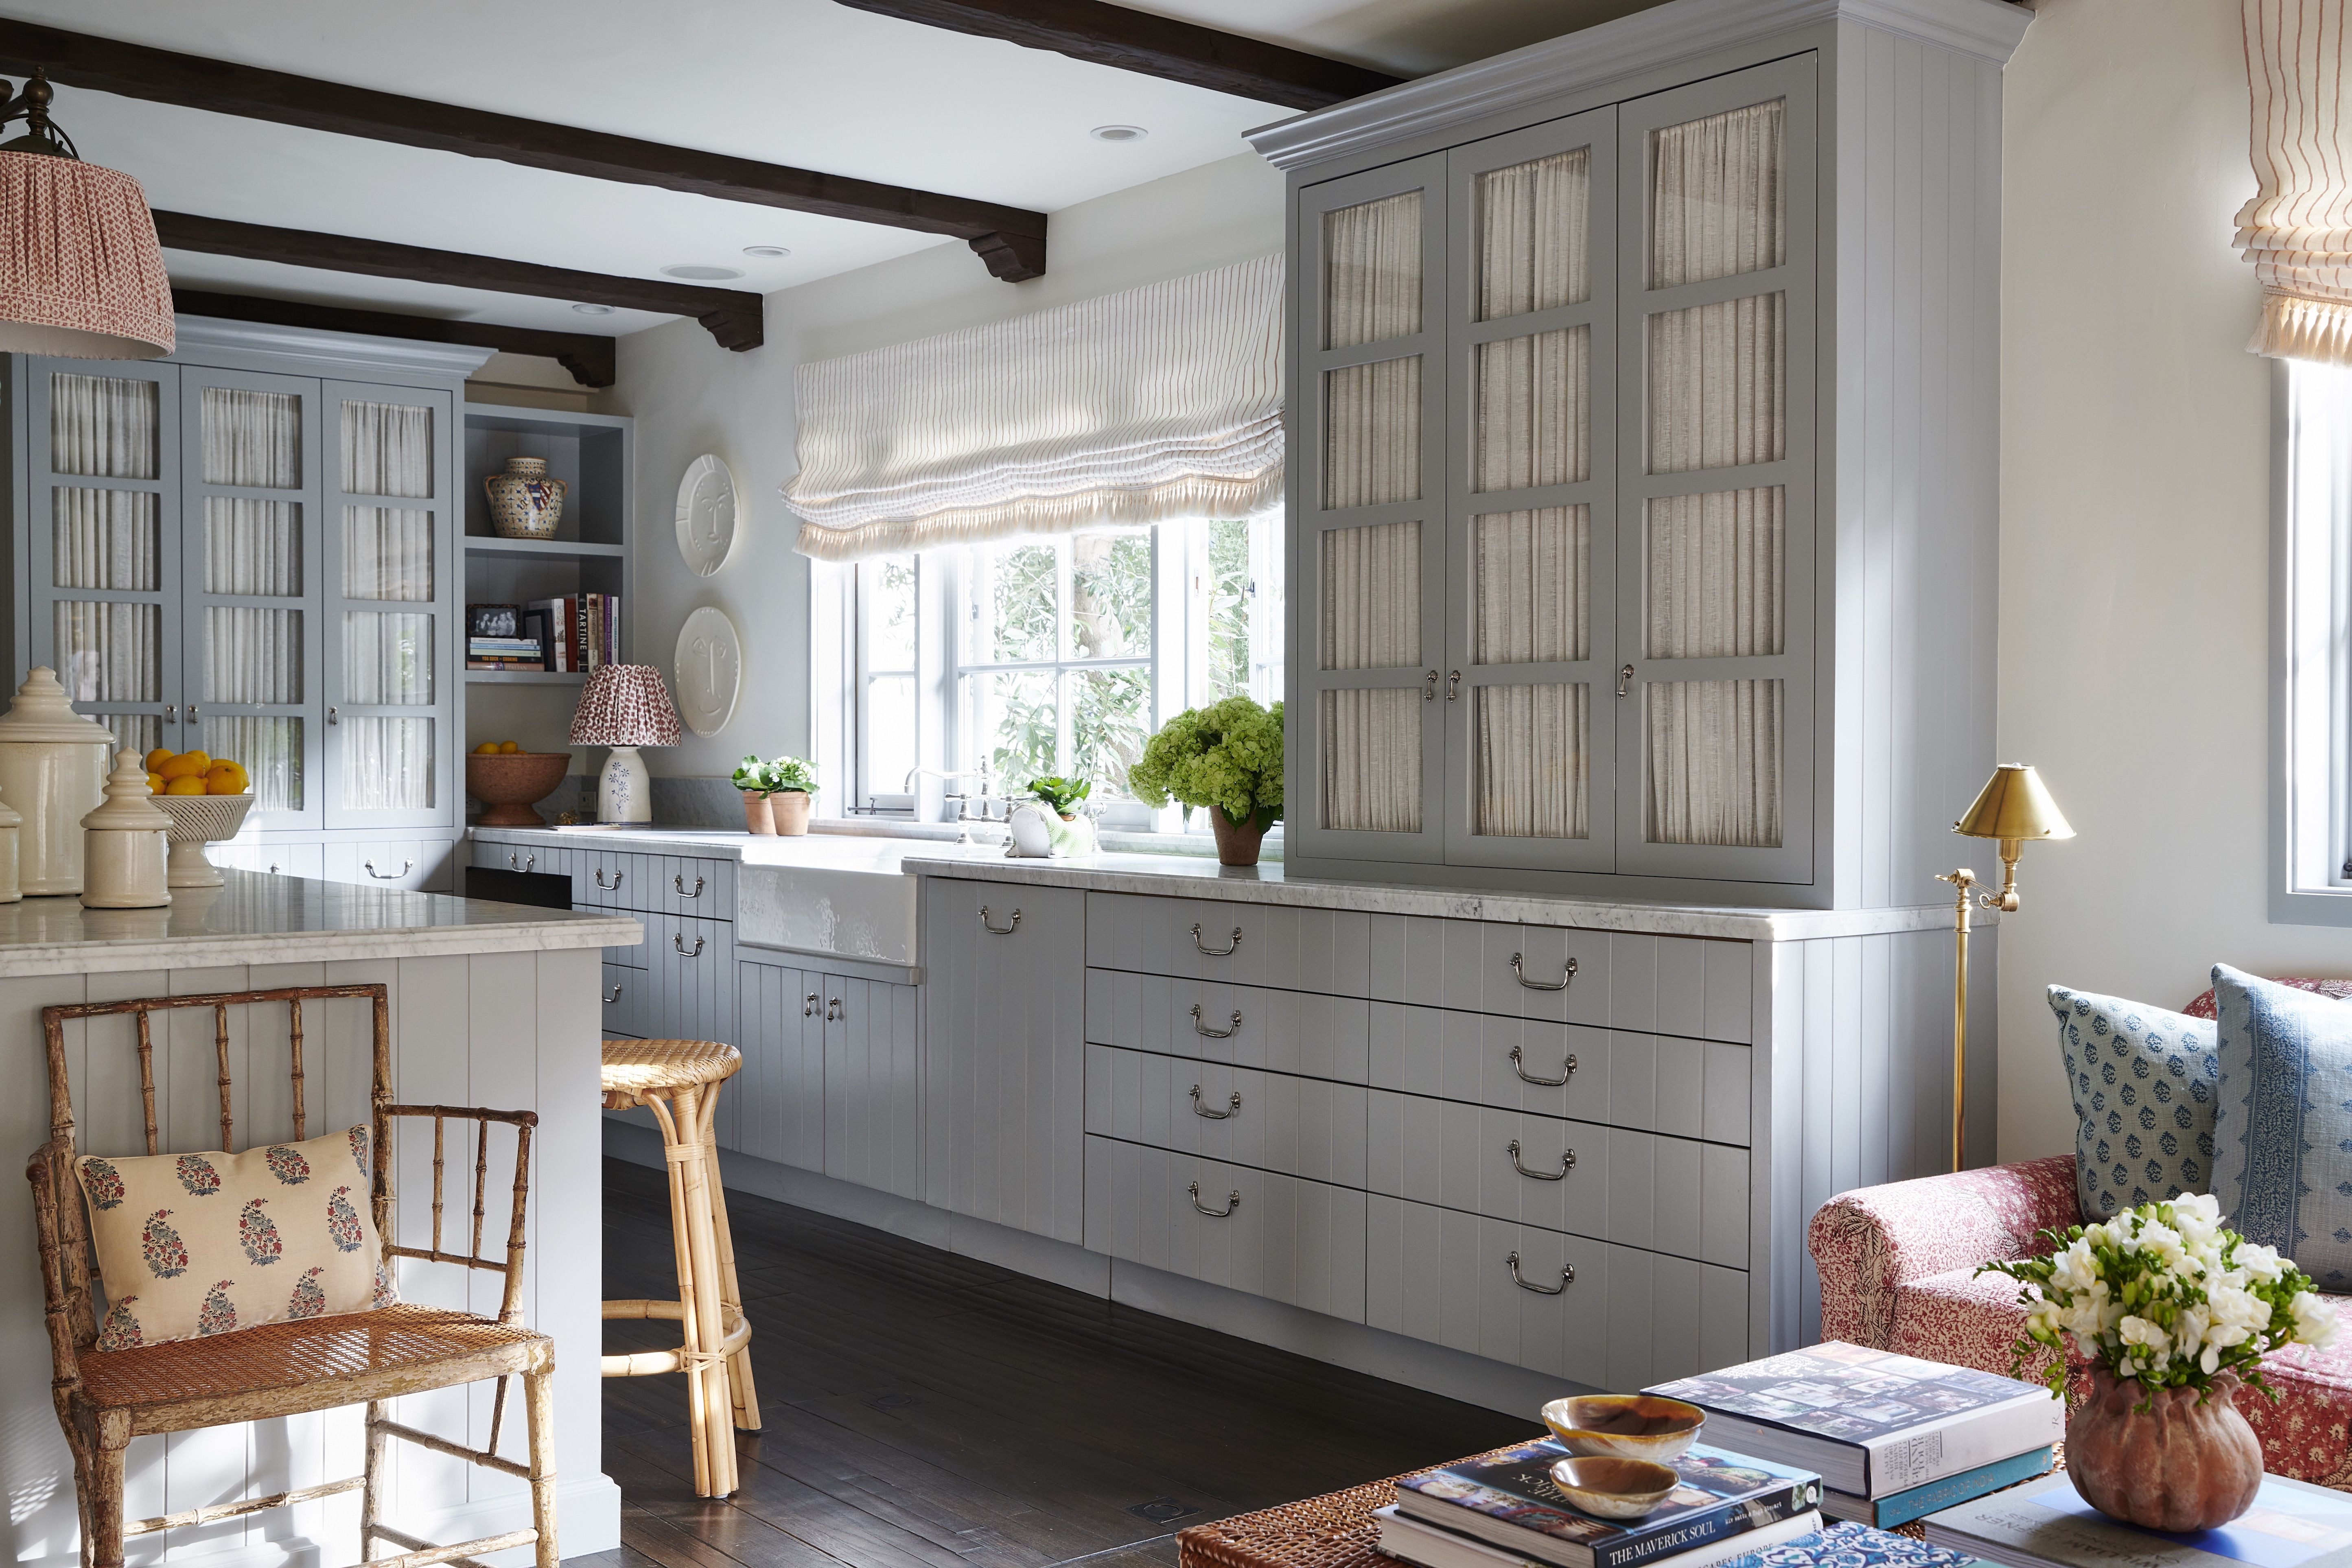 35 Best Kitchen Cabinet Ideas - Beautiful Kitchen Cabinet Design